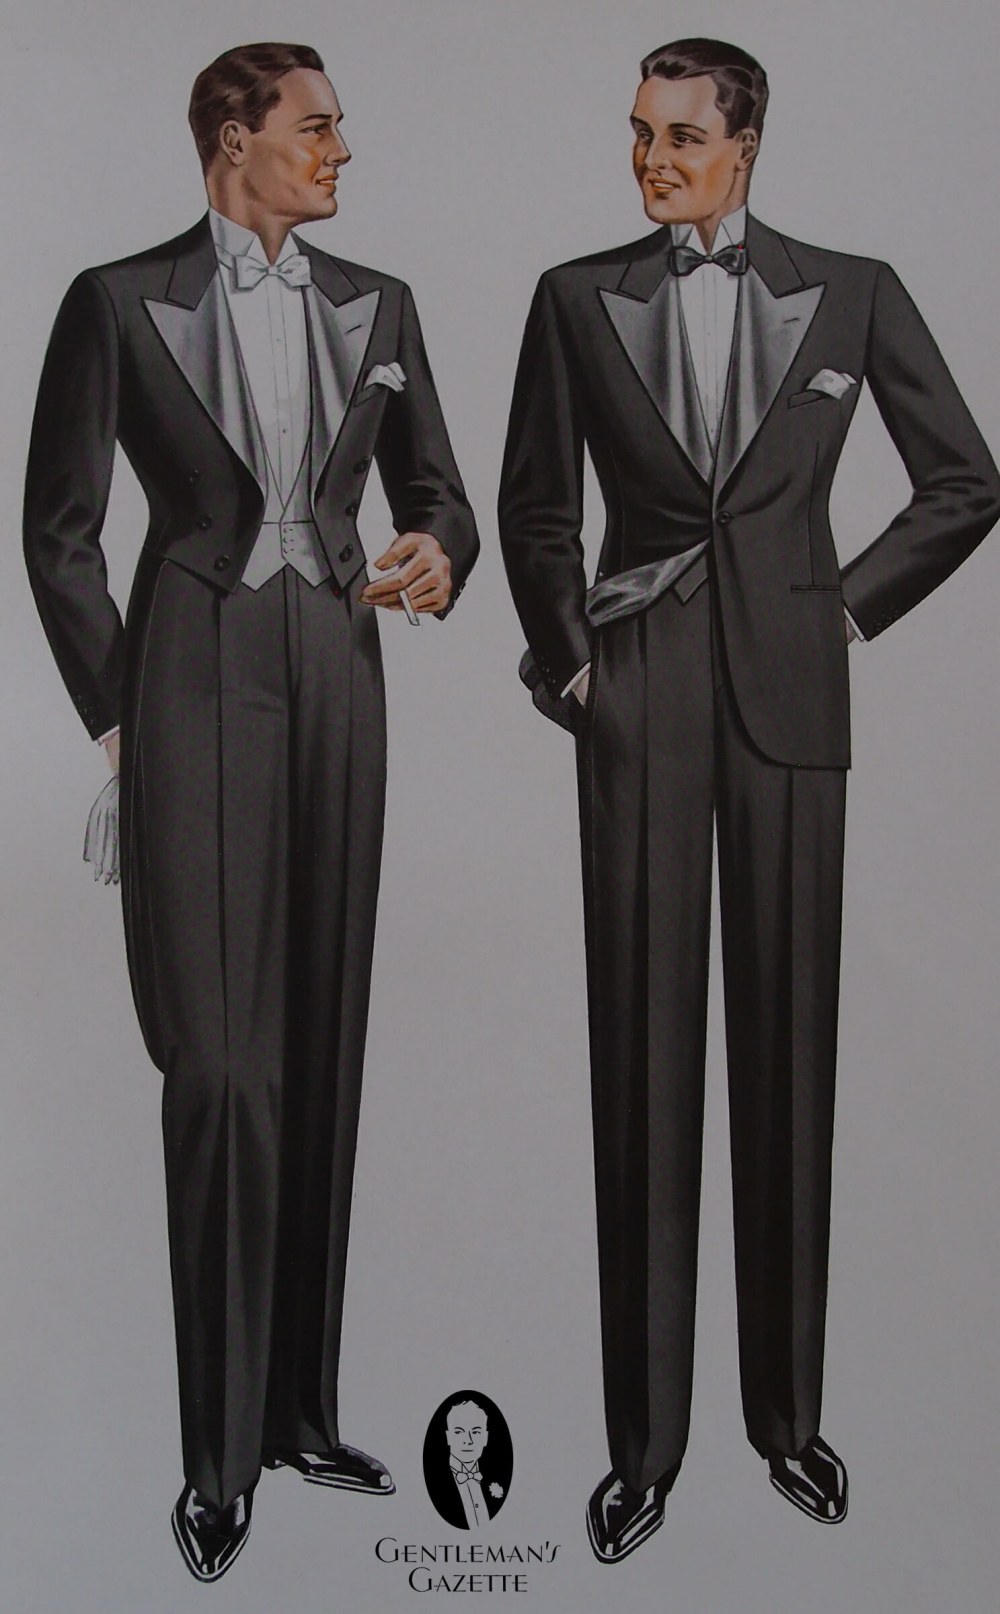 BZ-su-khac-biet-dress-code-white-tie-black-tie-01